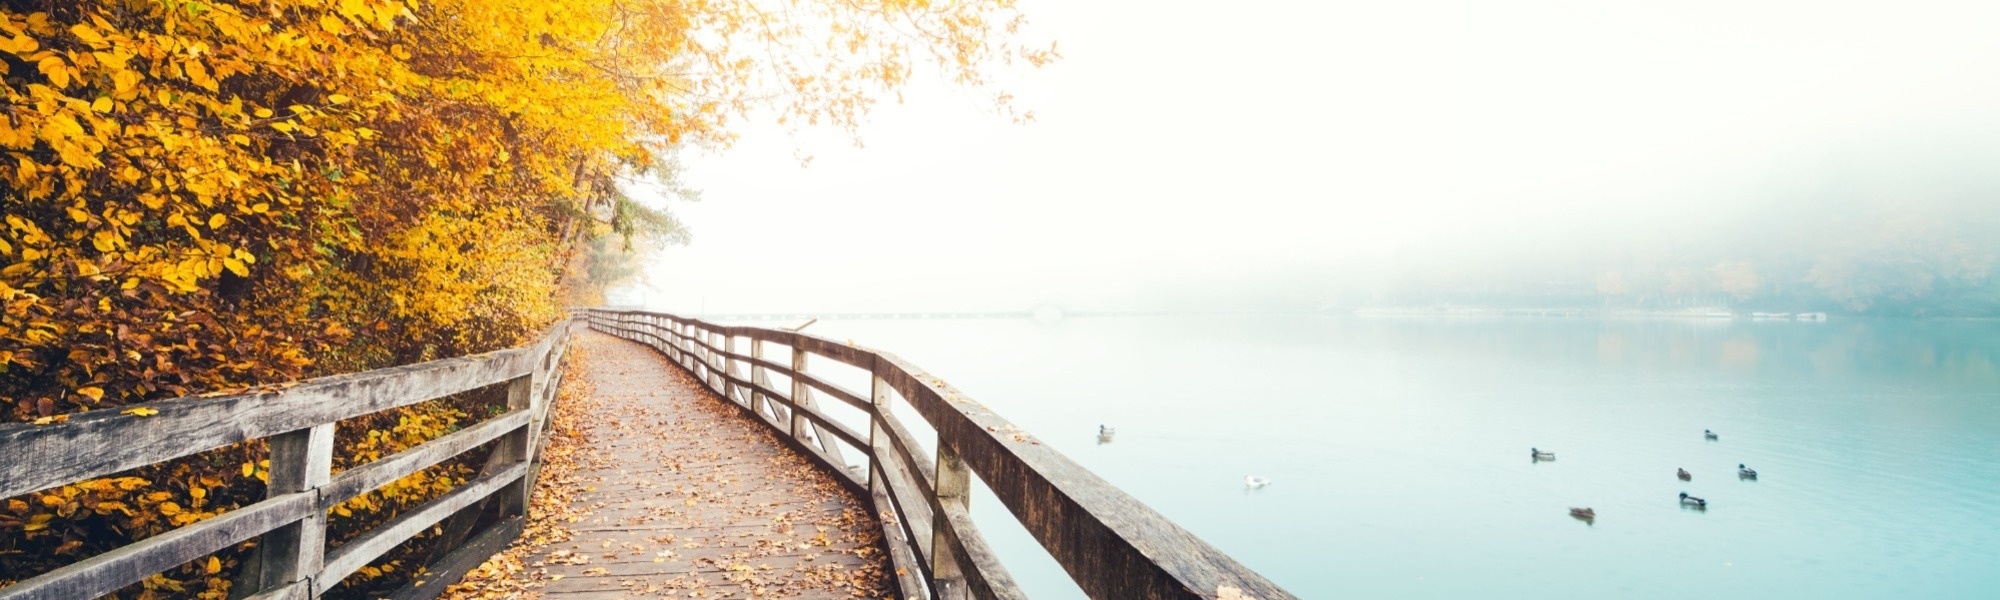 Boardwalk beside lake in Autumn